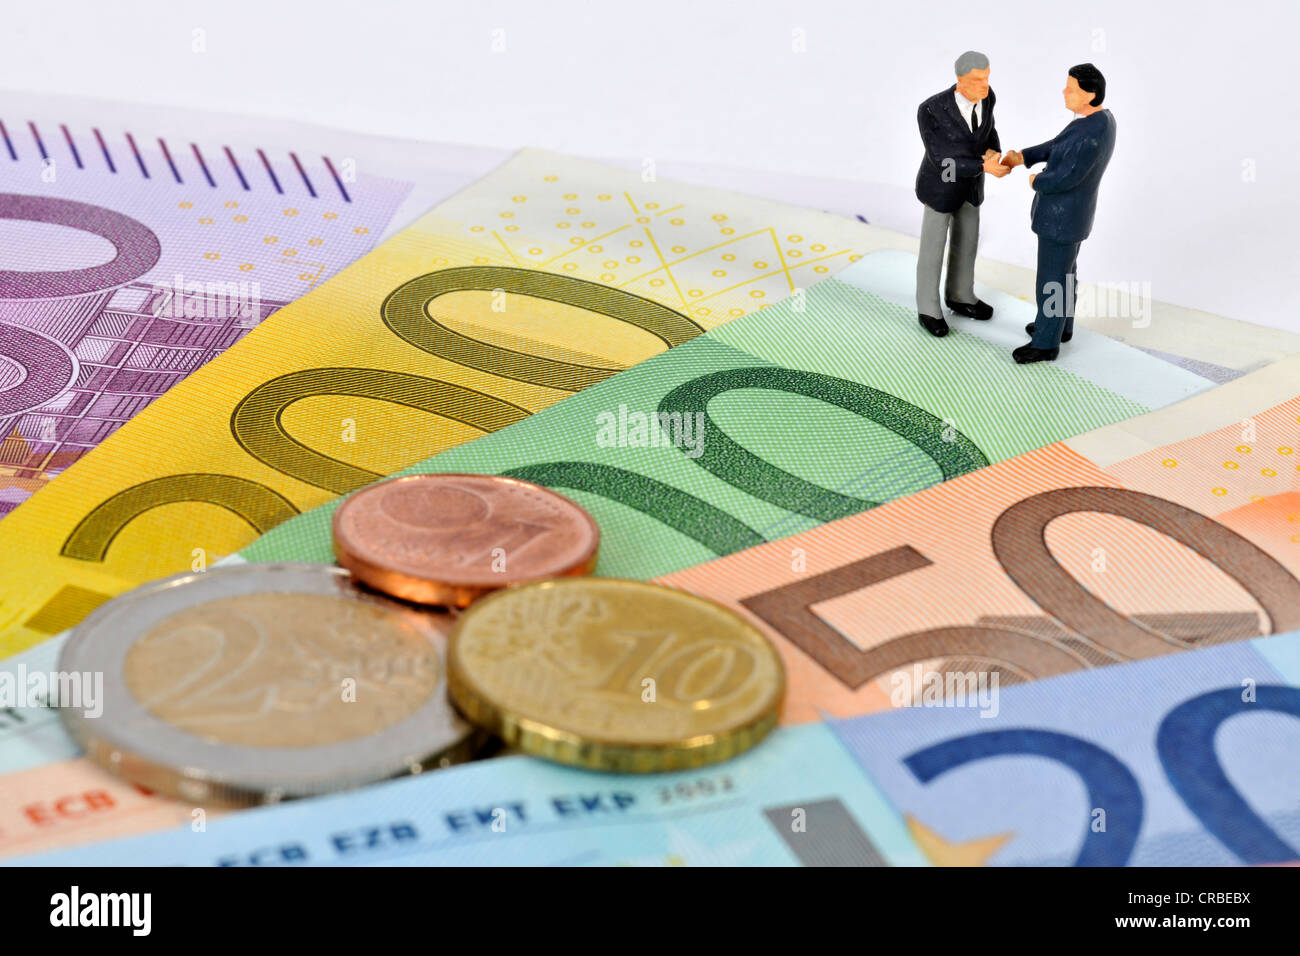 Miniatur-Figuren von Managern Händeschütteln beim stehen auf Euro-Banknoten und Münzen, symbolisches Bild für Unternehmen Stockfoto